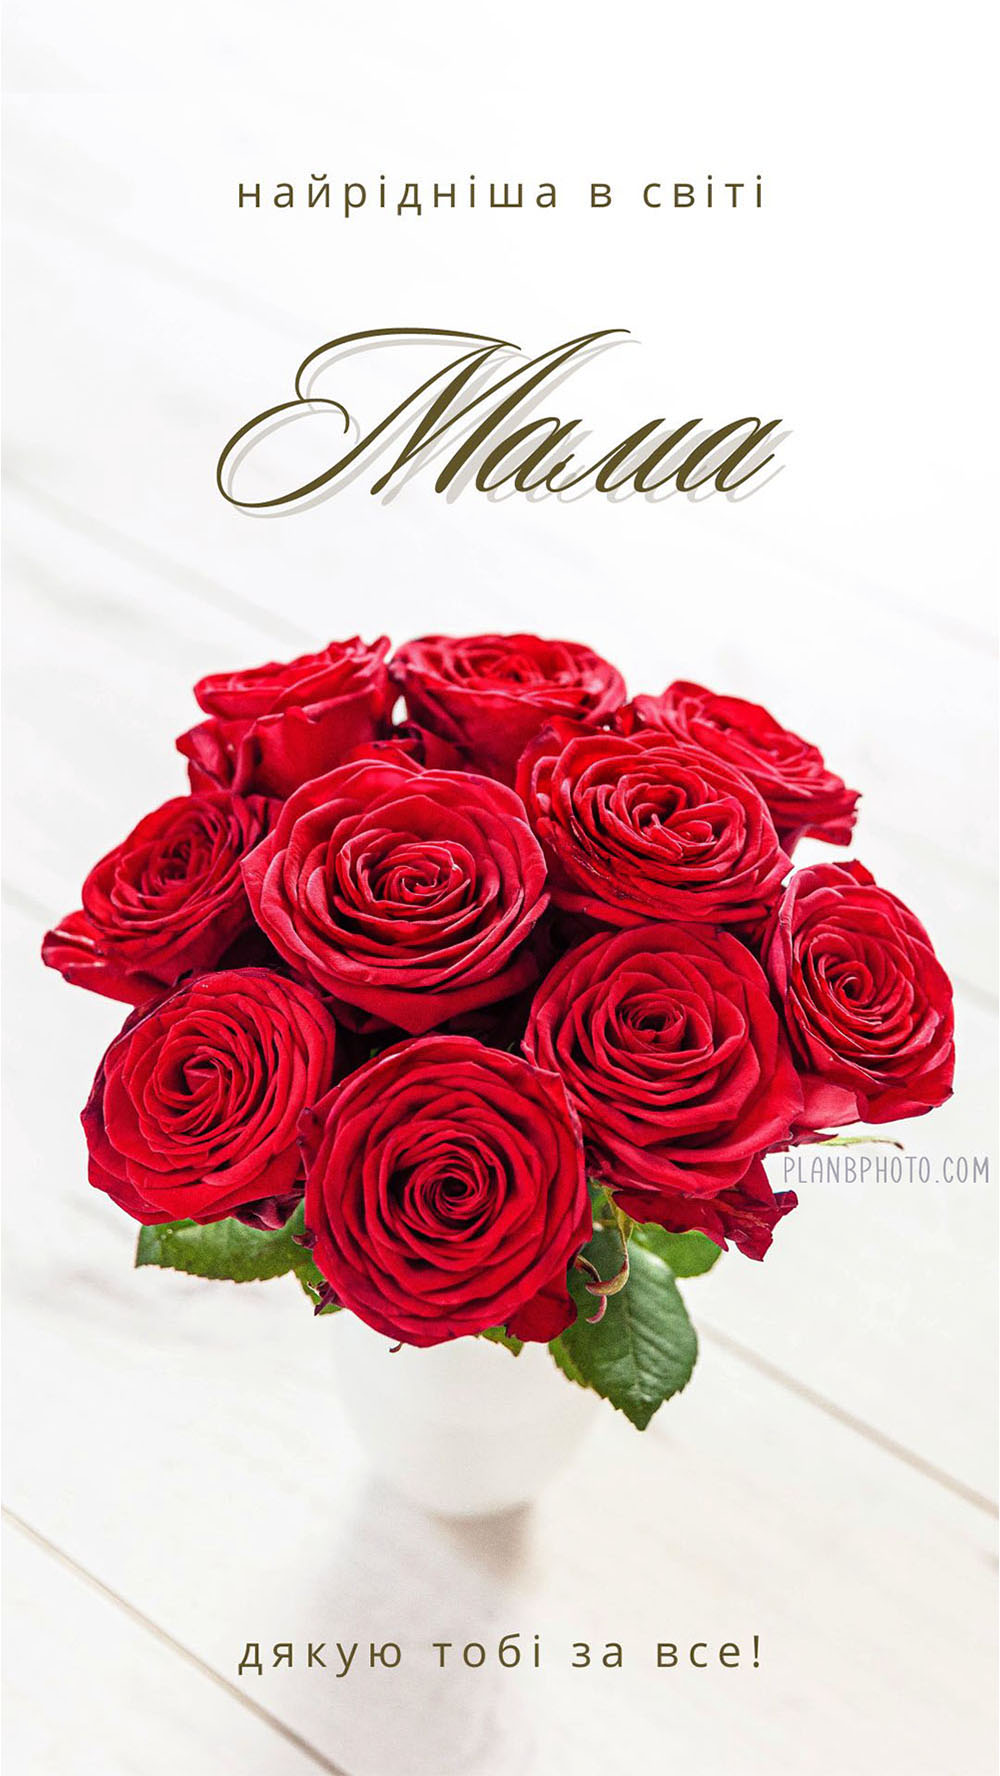 З днем матері привітання з червоними трояндами